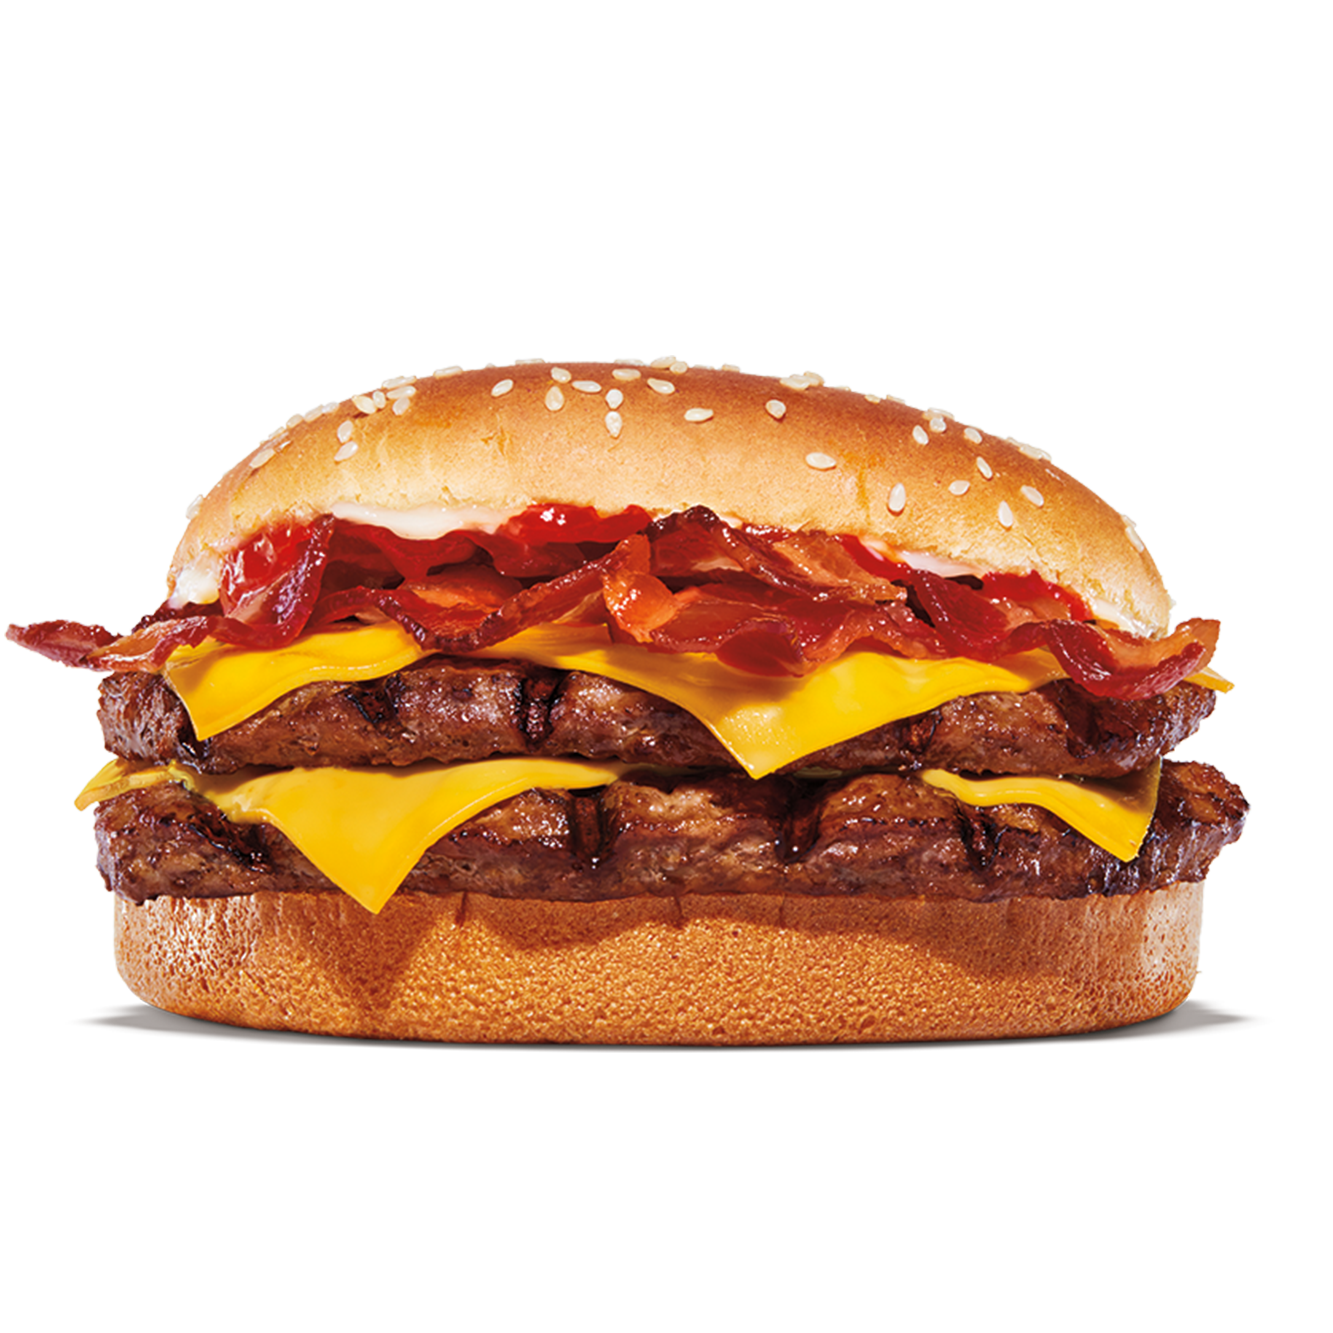 Burger King Clayton (706)782-4576